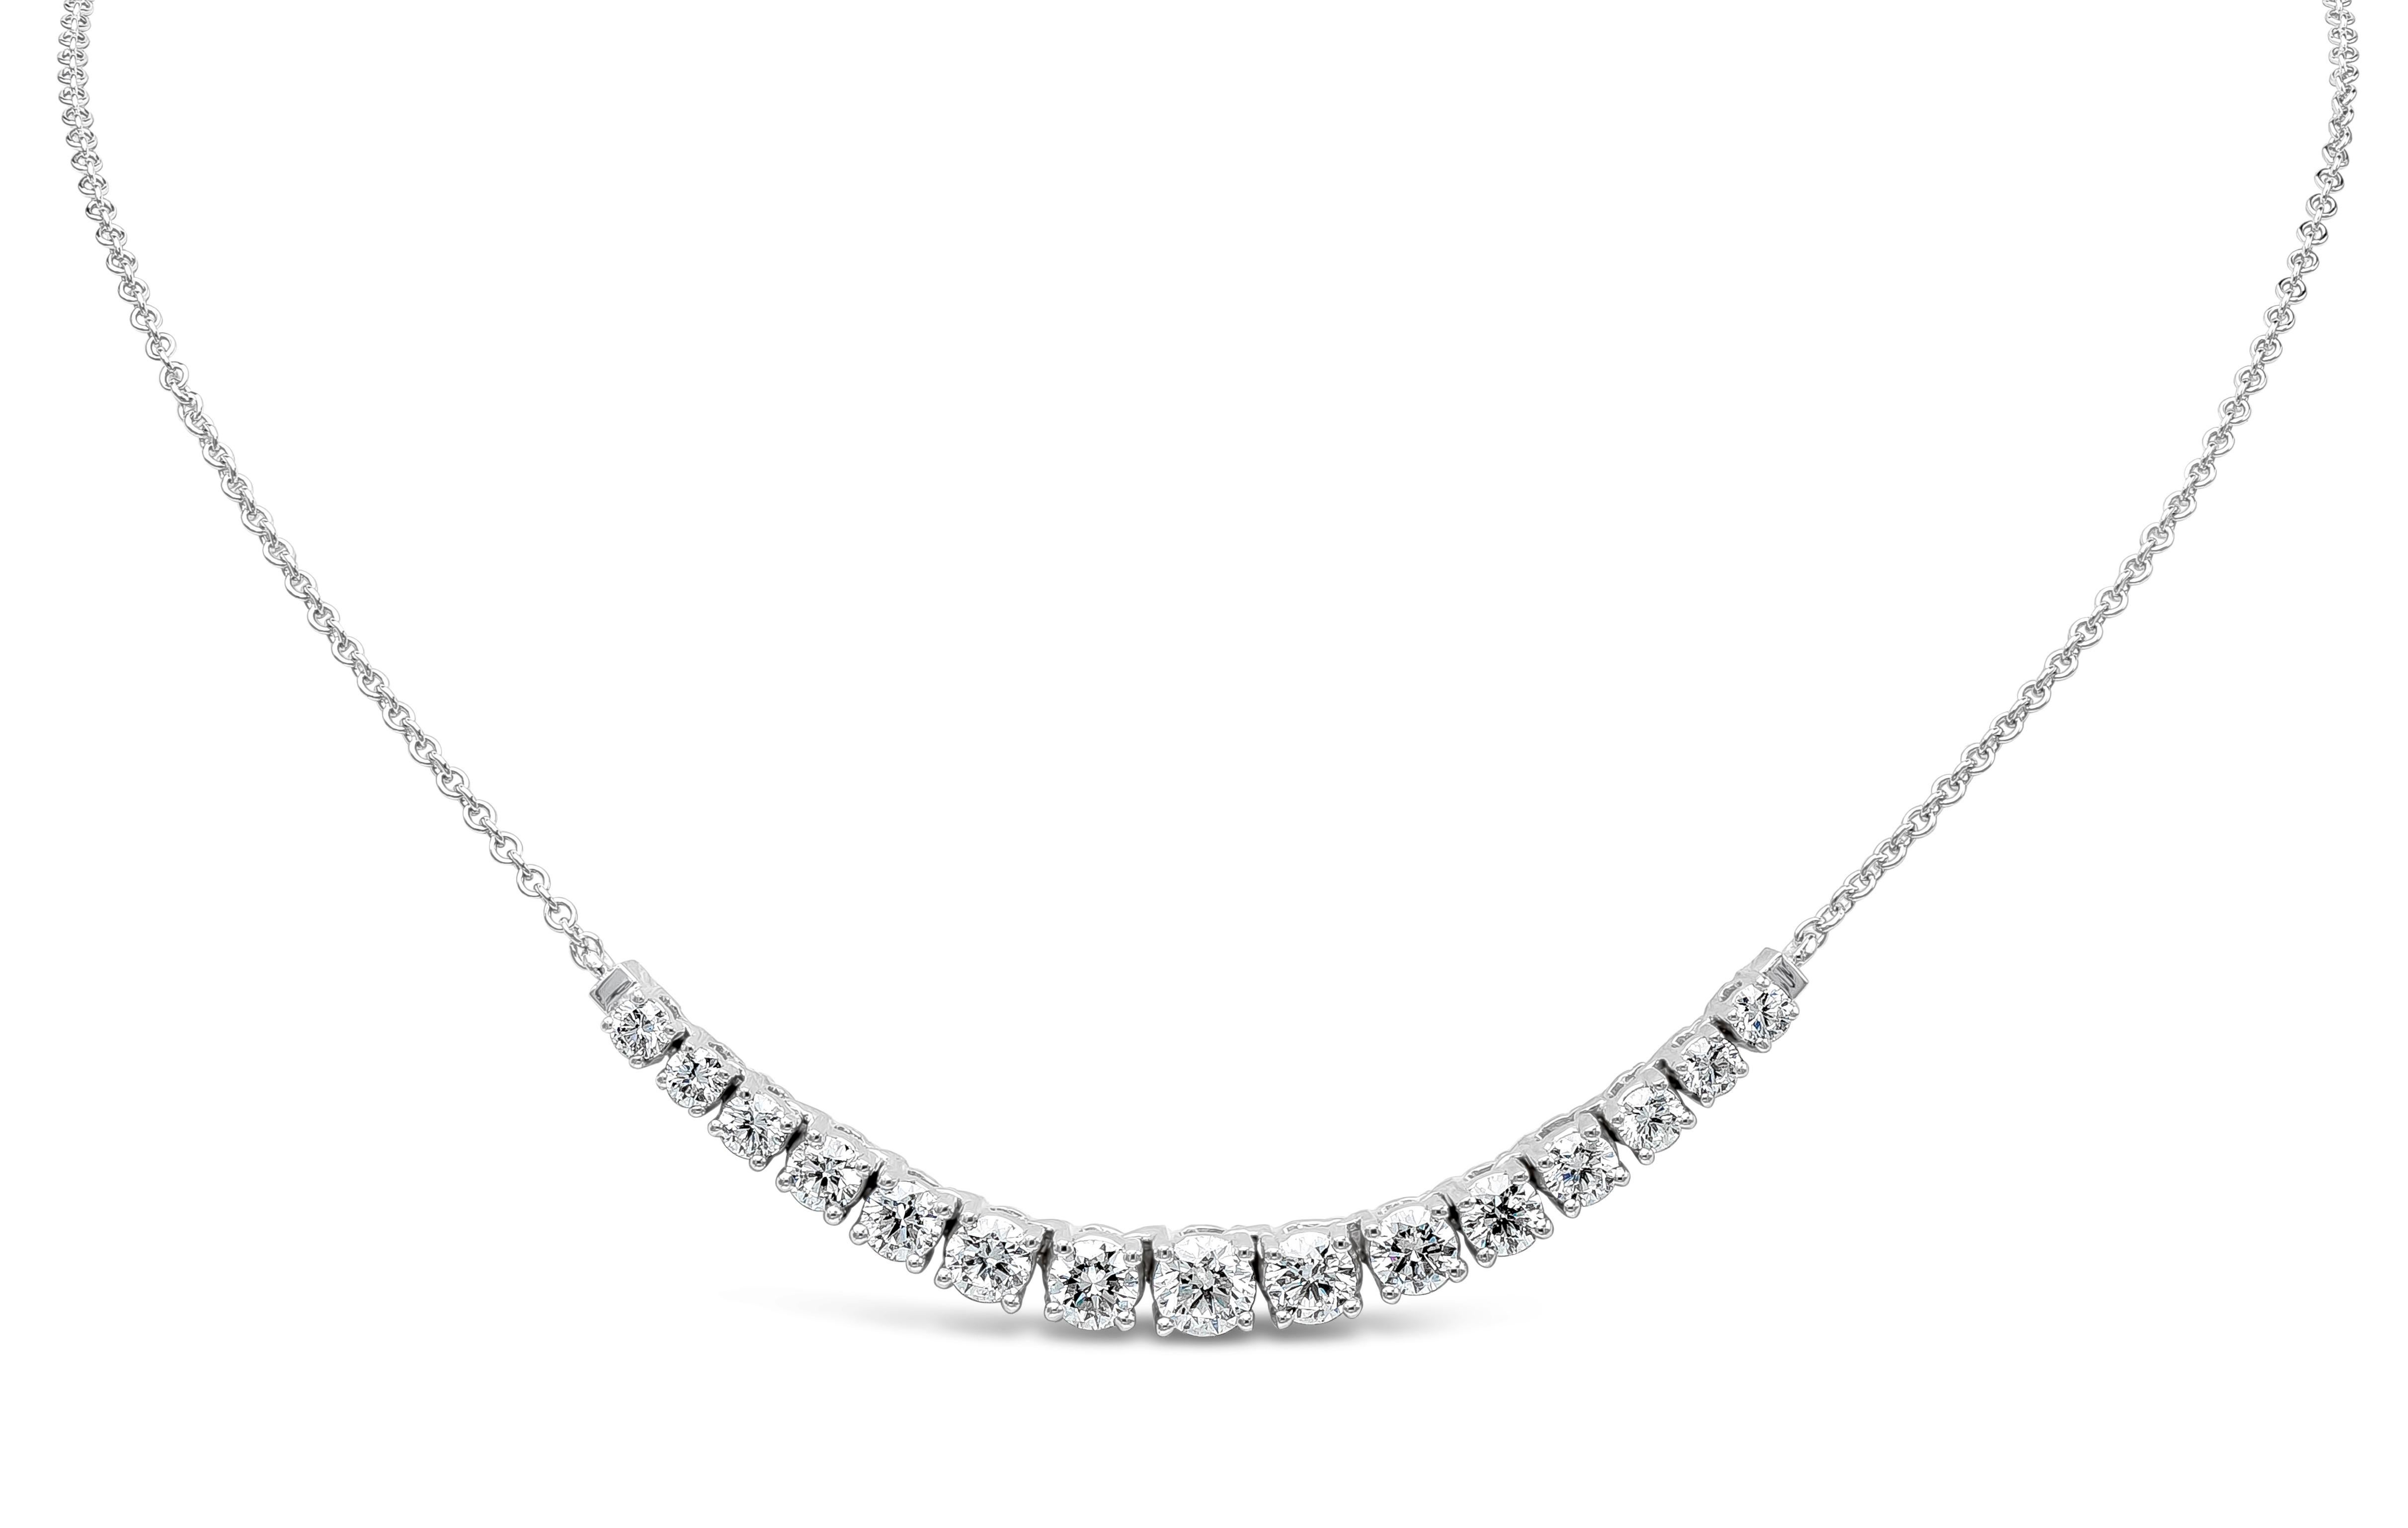 Eine modische Mini-Halskette im Riviere-Stil mit abgestuften runden Diamanten im Brillantschliff, aufgehängt an einer 18-Zoll-Weißgoldkette und gefasst in einer dreizackigen Korbfassung. Die Diamanten wiegen insgesamt 2,70 Karat und sind von